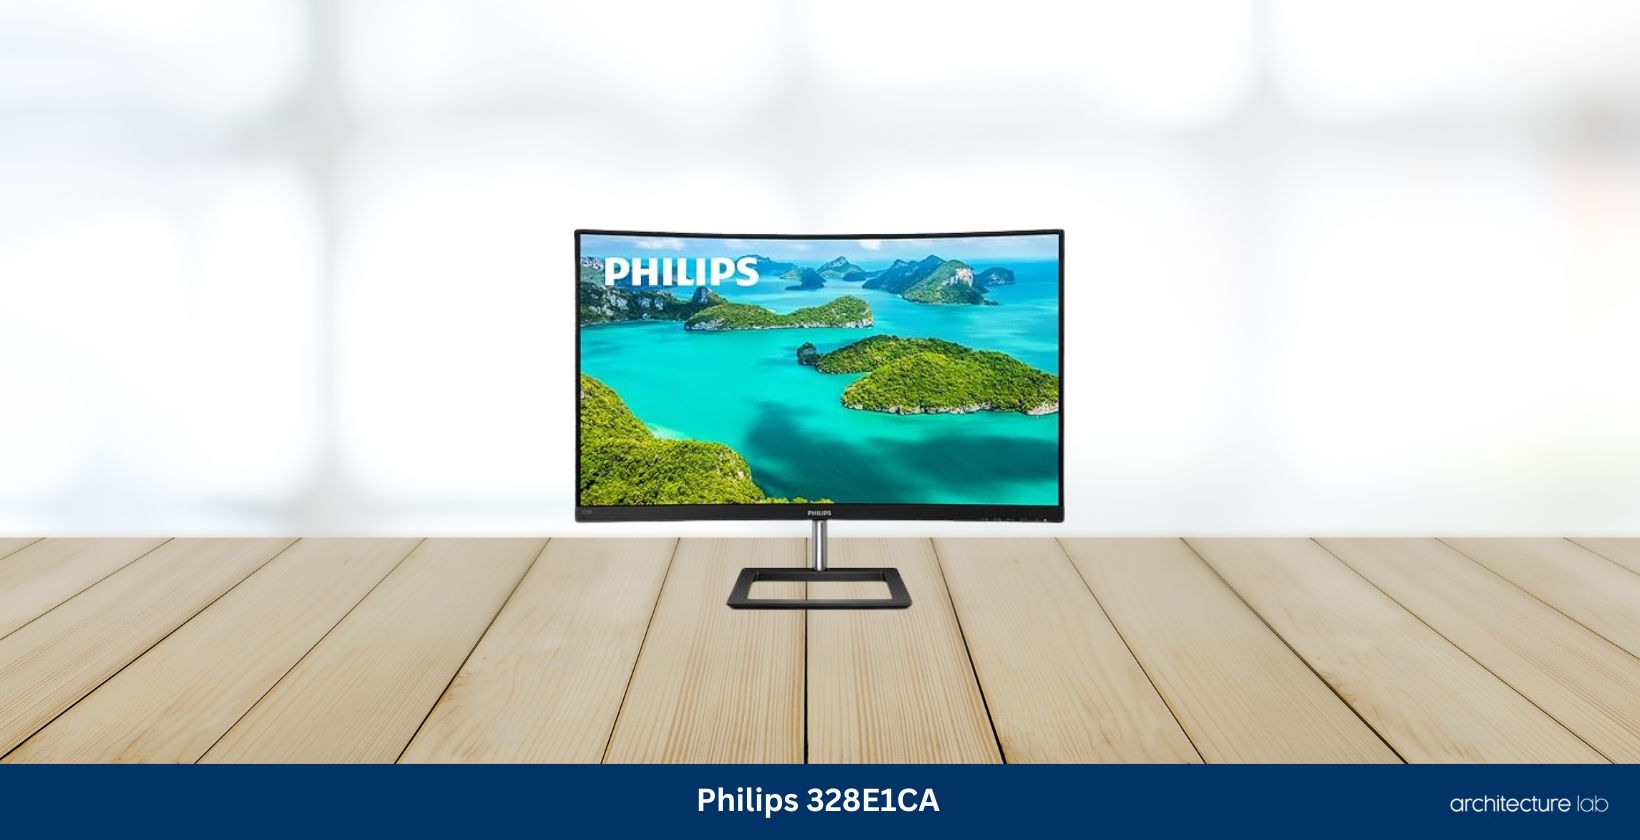 Philips 328e1ca